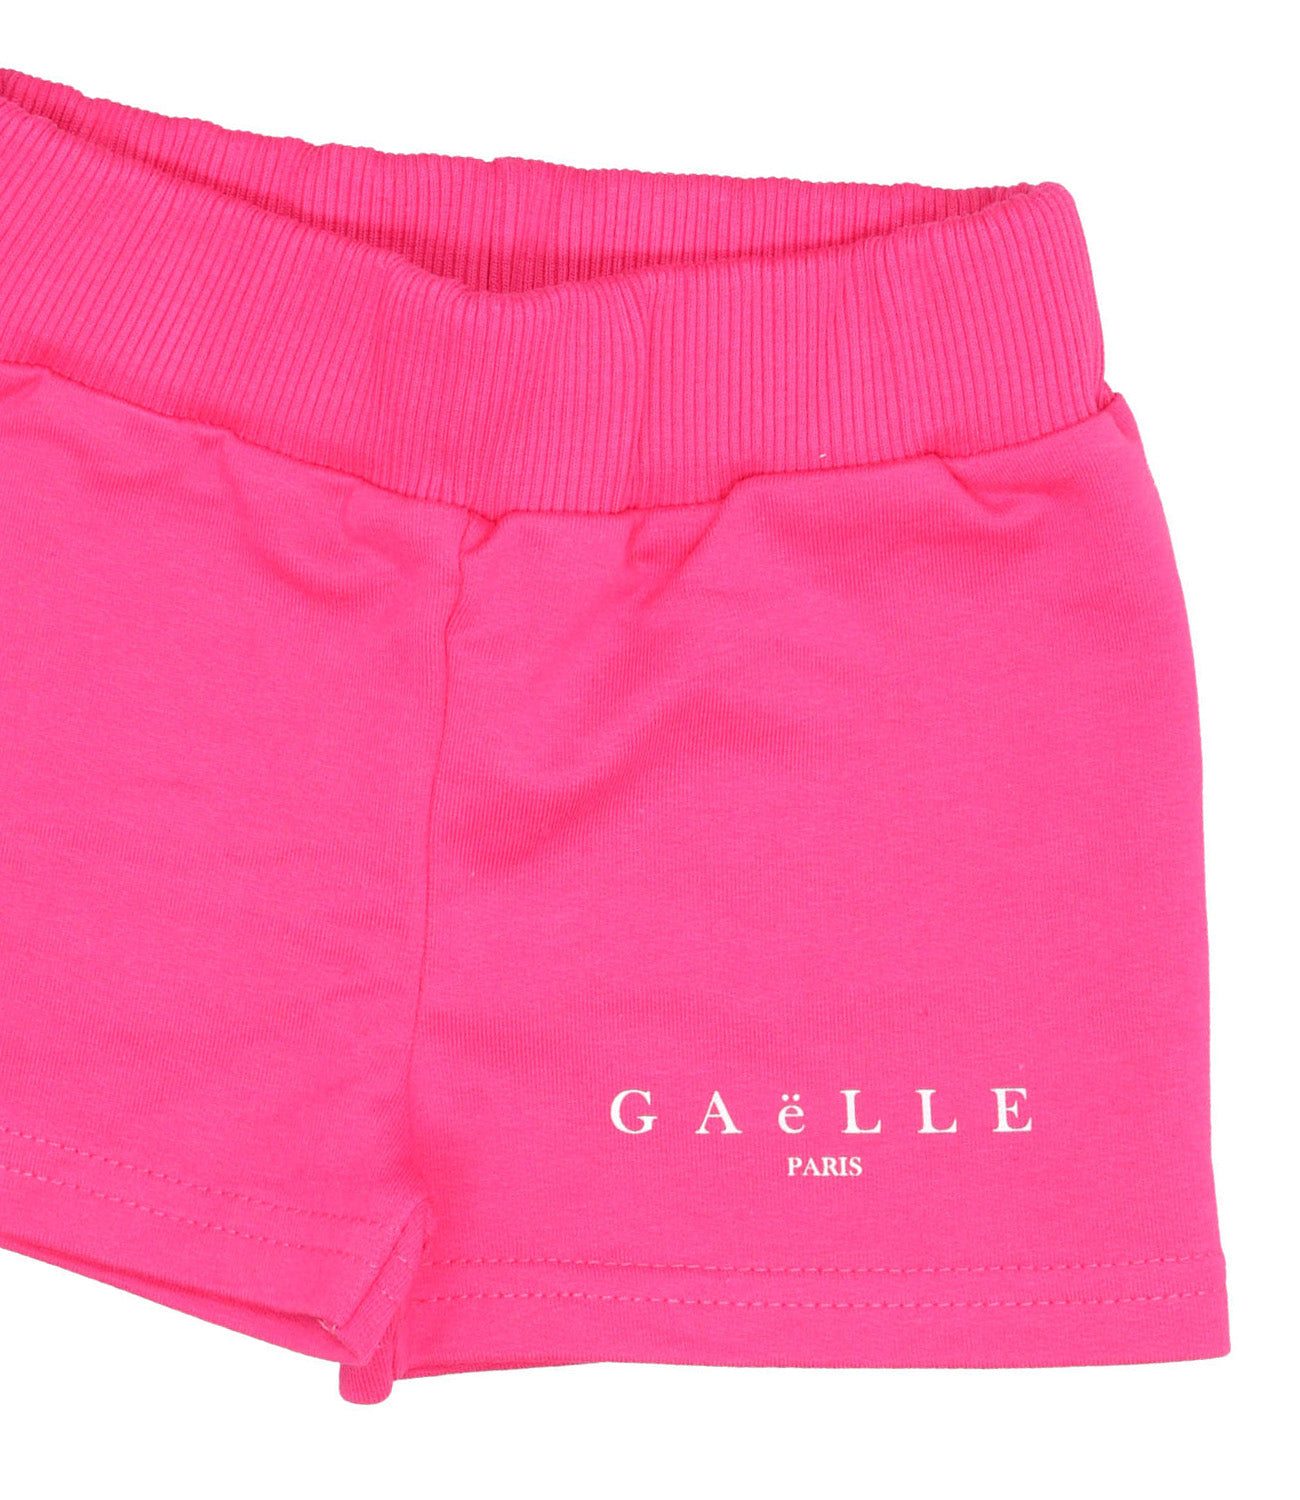 Gaelle Paris | Shorts Fuxia